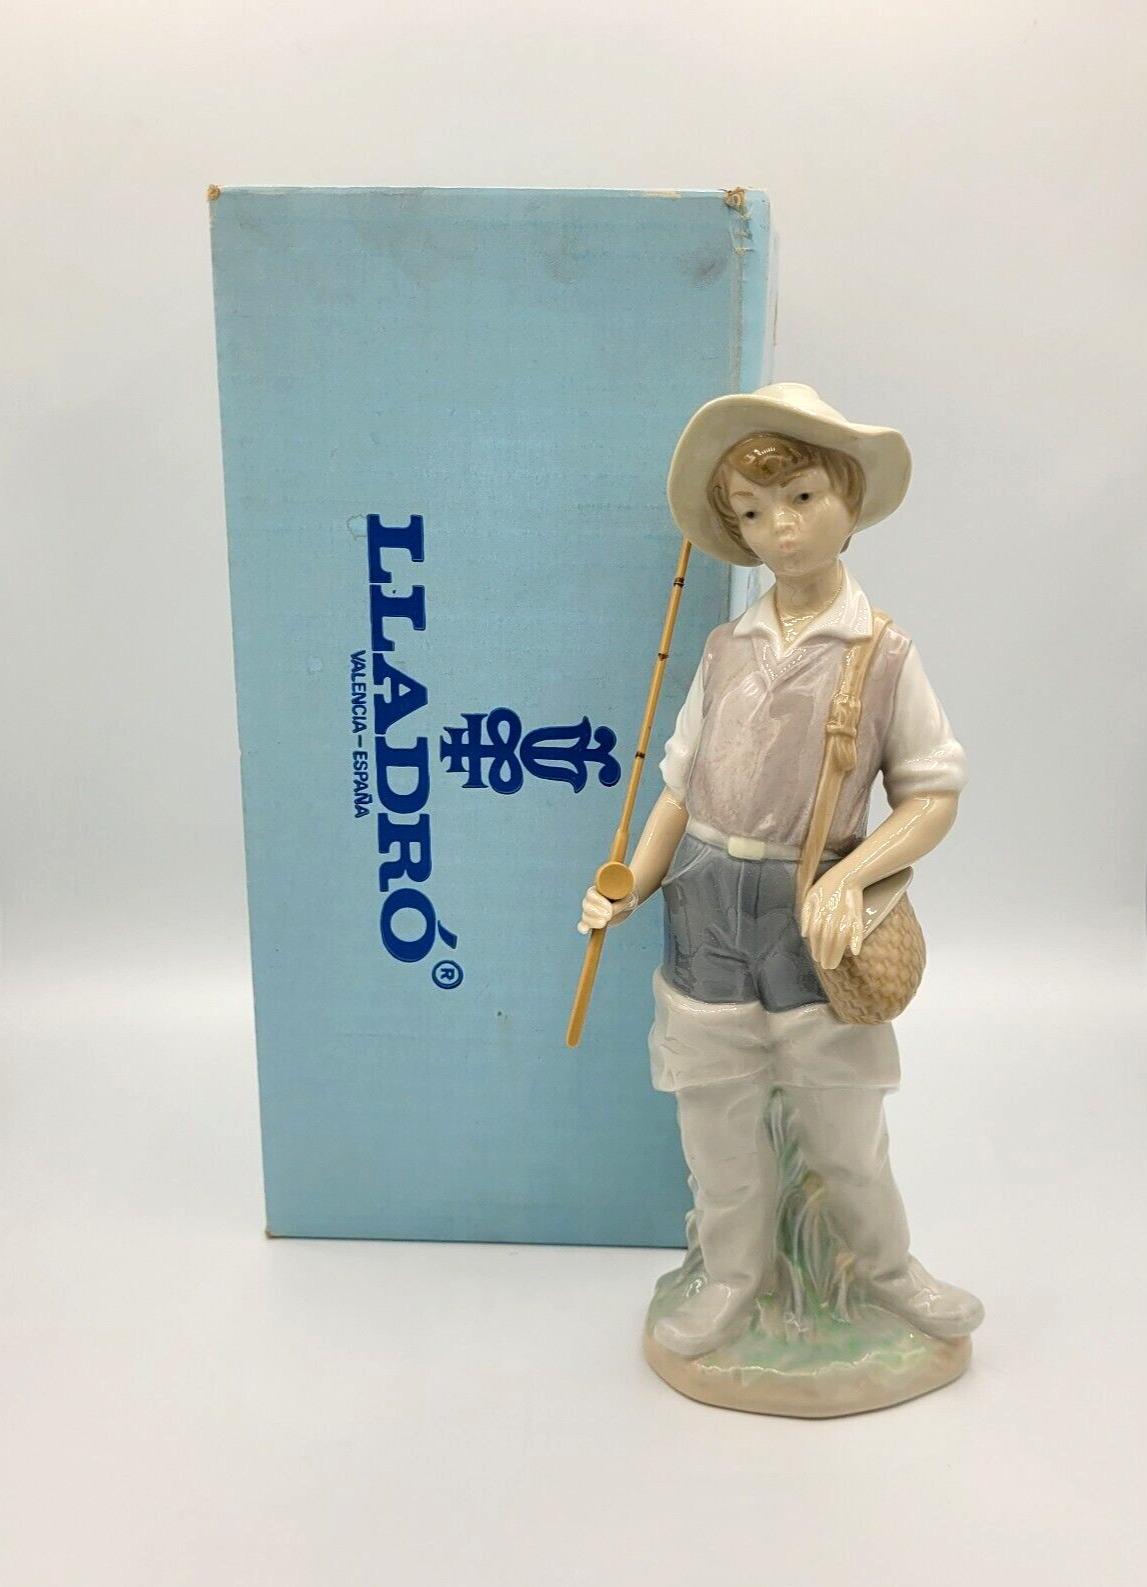 LLADRO Figurine Fisherman Boy 1977 Fishing Pole Orig Box 4809 Nino Pescador Vtg